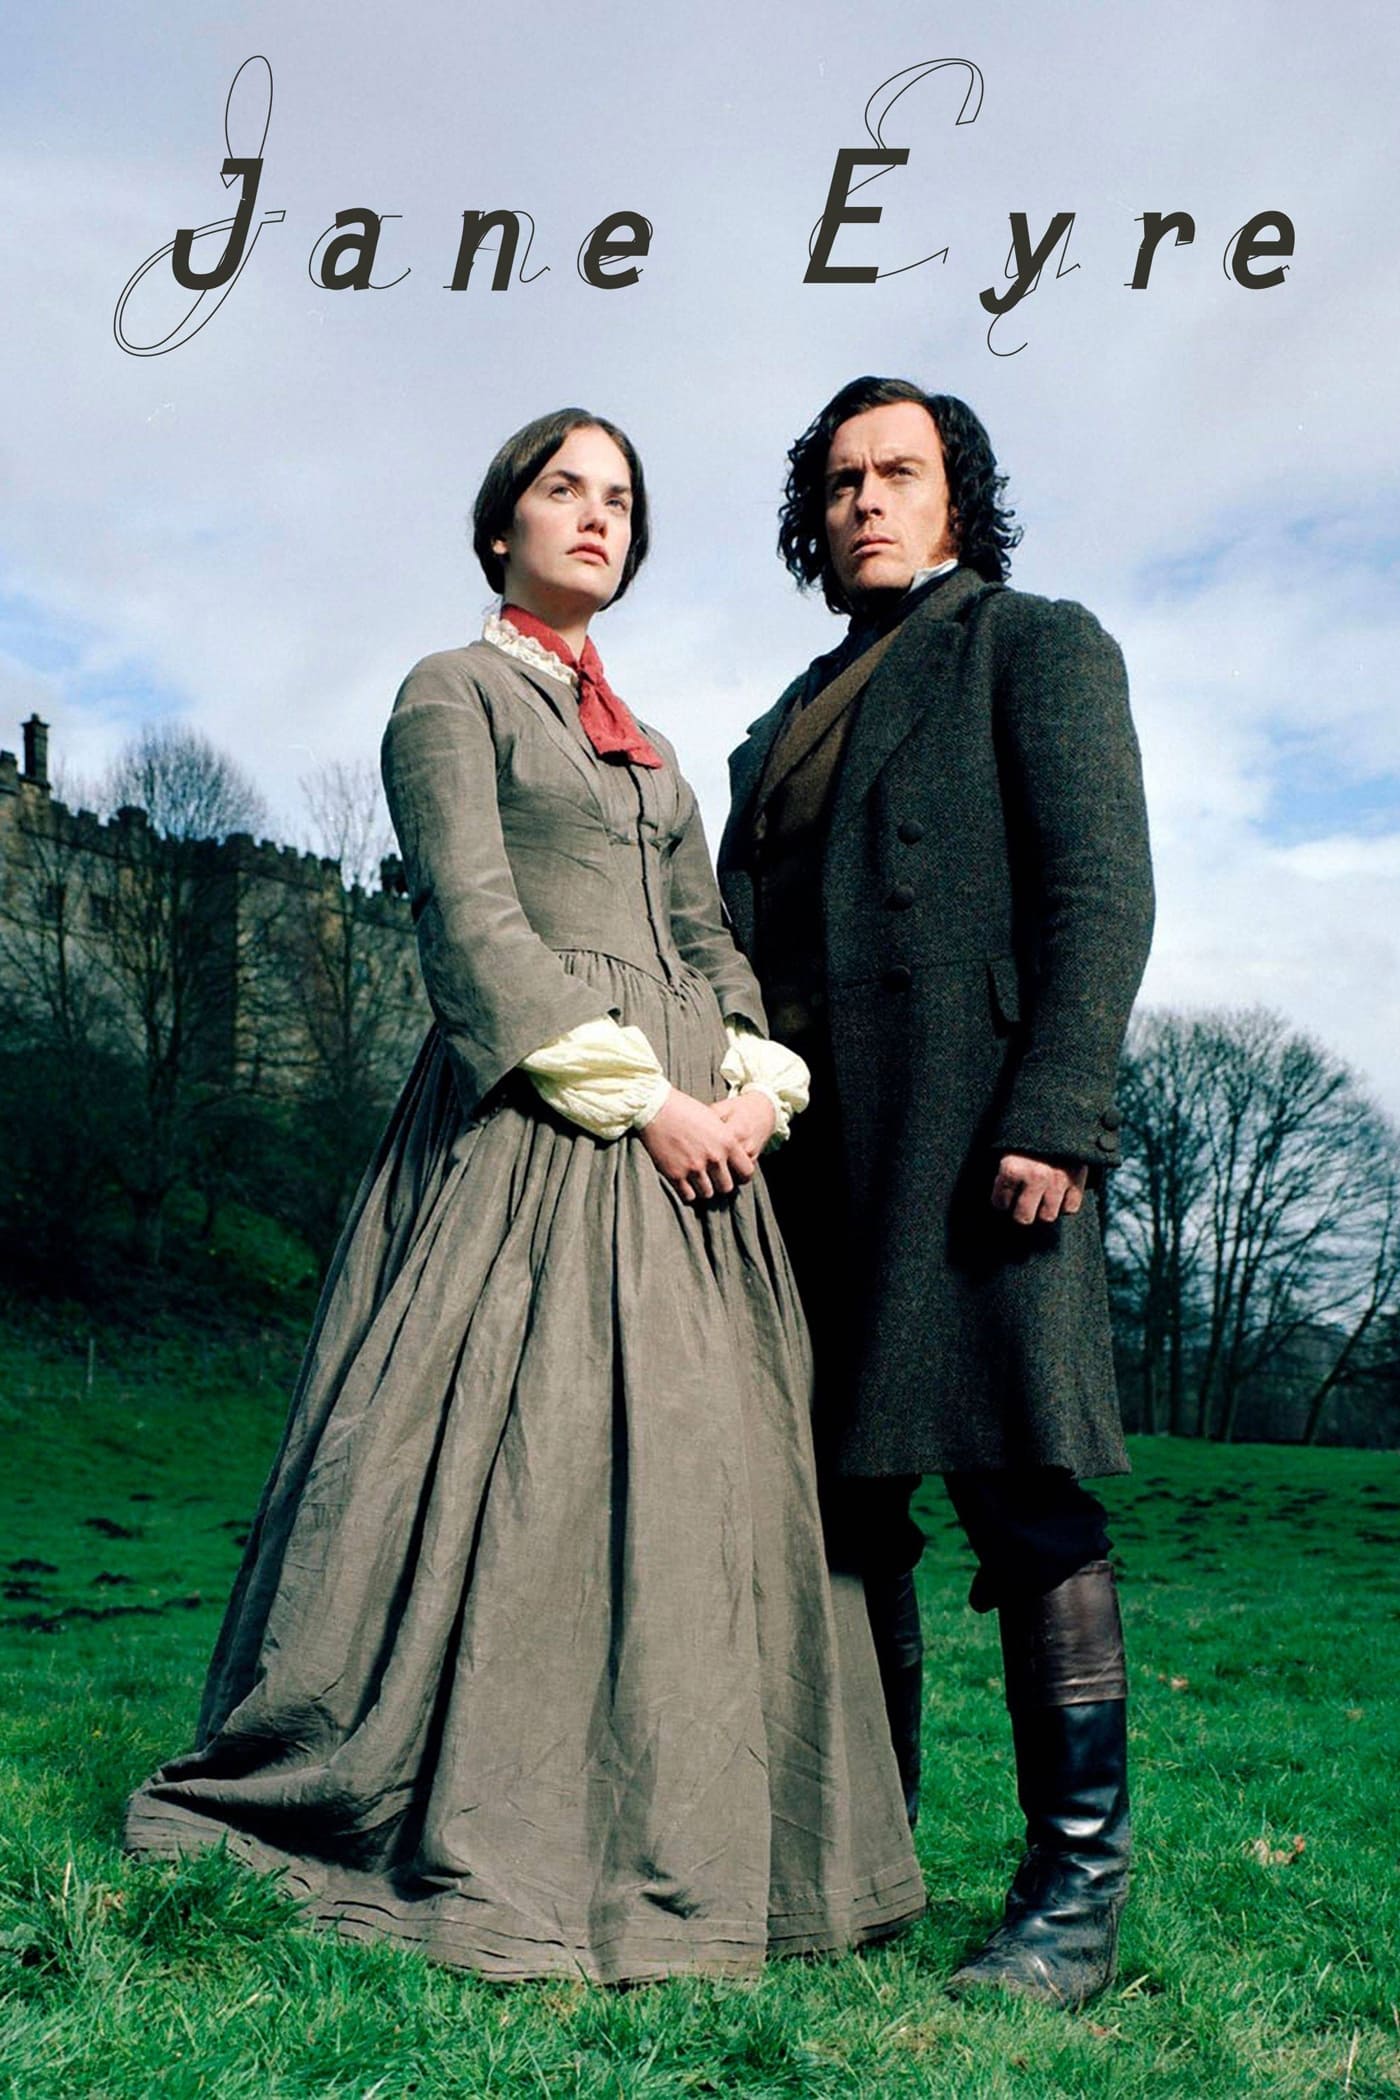 ดูหนังออนไลน์ฟรี Jane Eyre เจน แอร์ หัวใจรัก นิรันดร